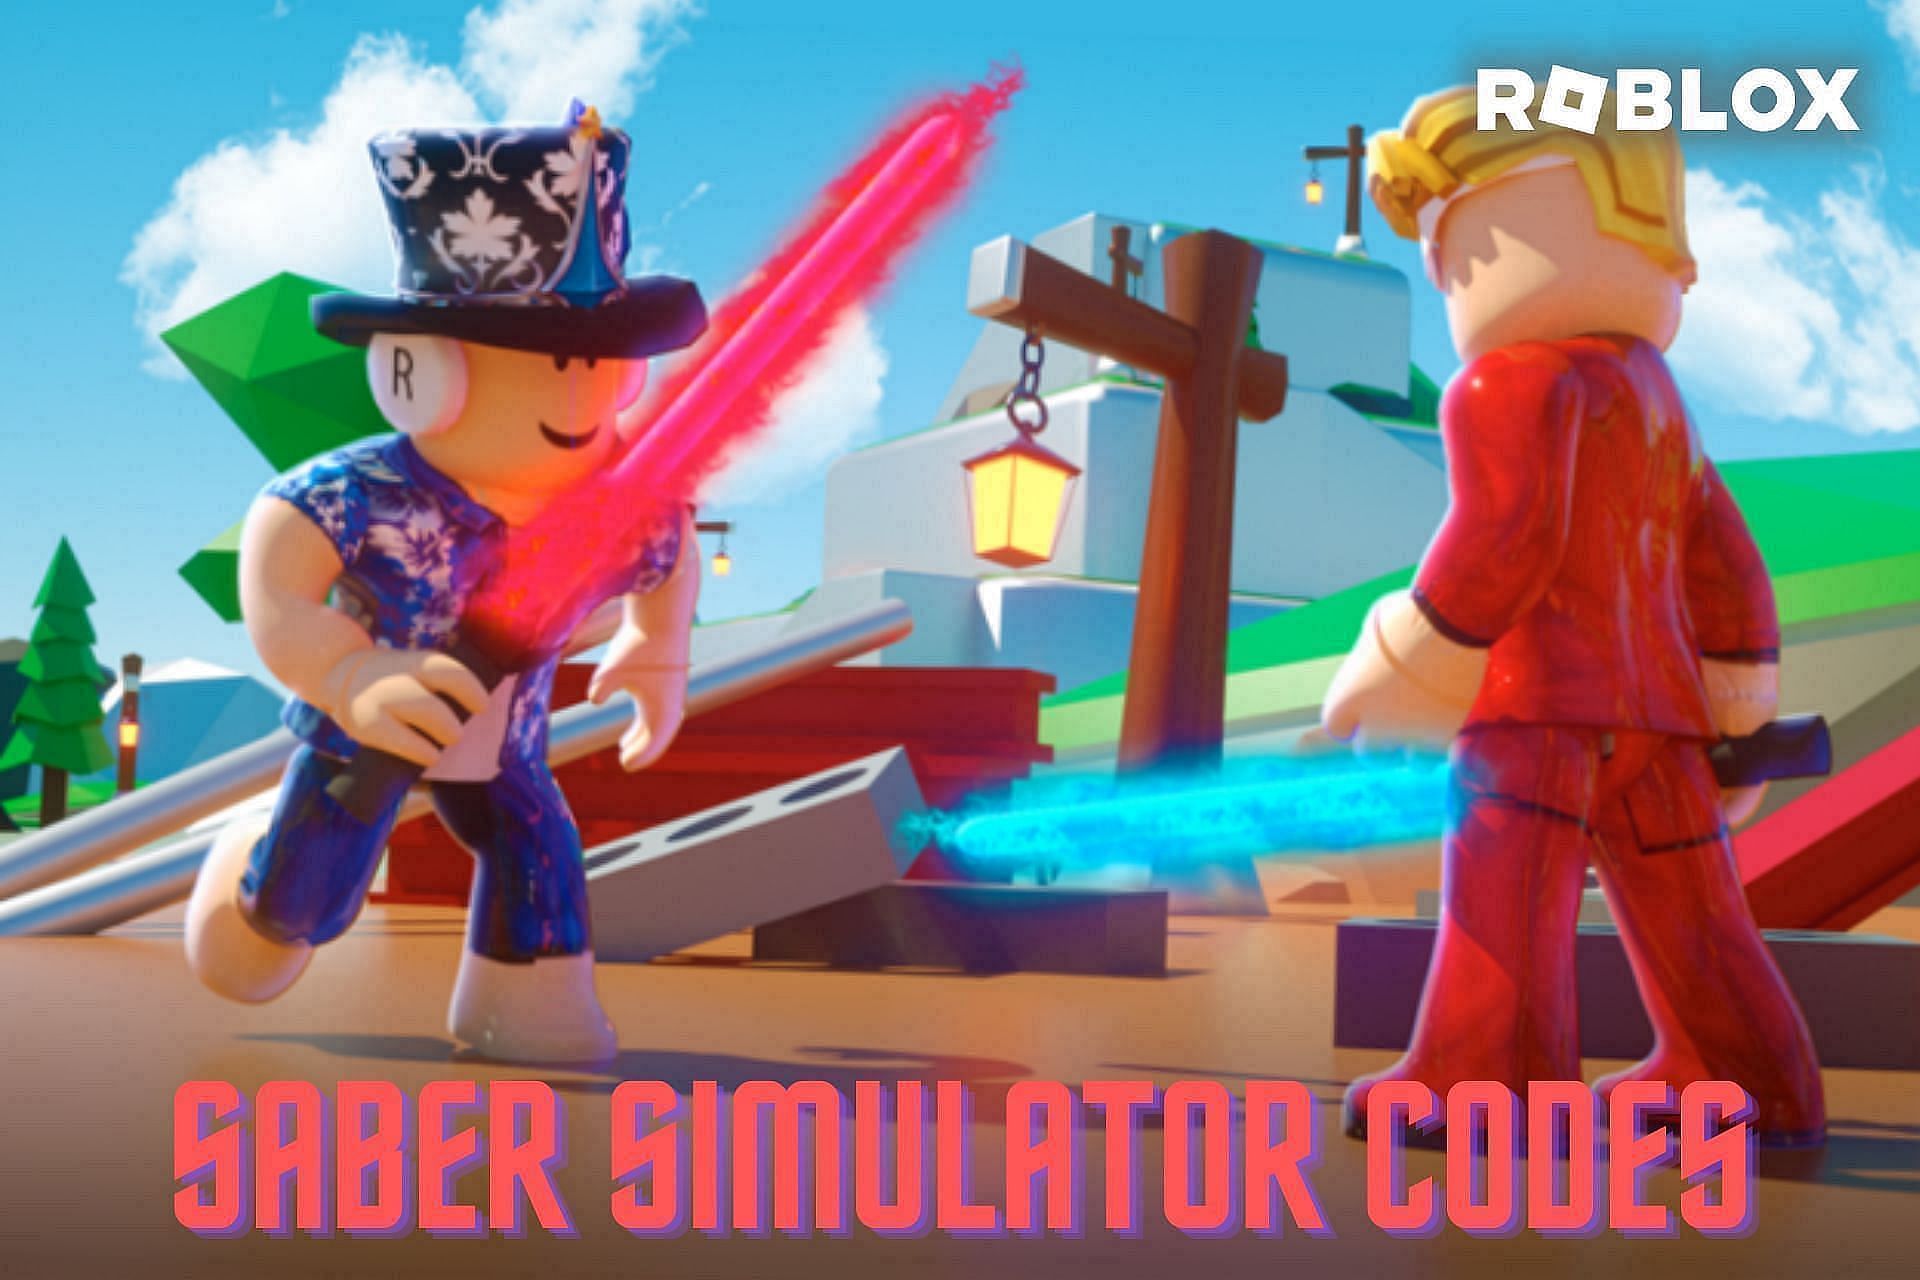 Saber Simulator codes (Image via Sportskeeda)